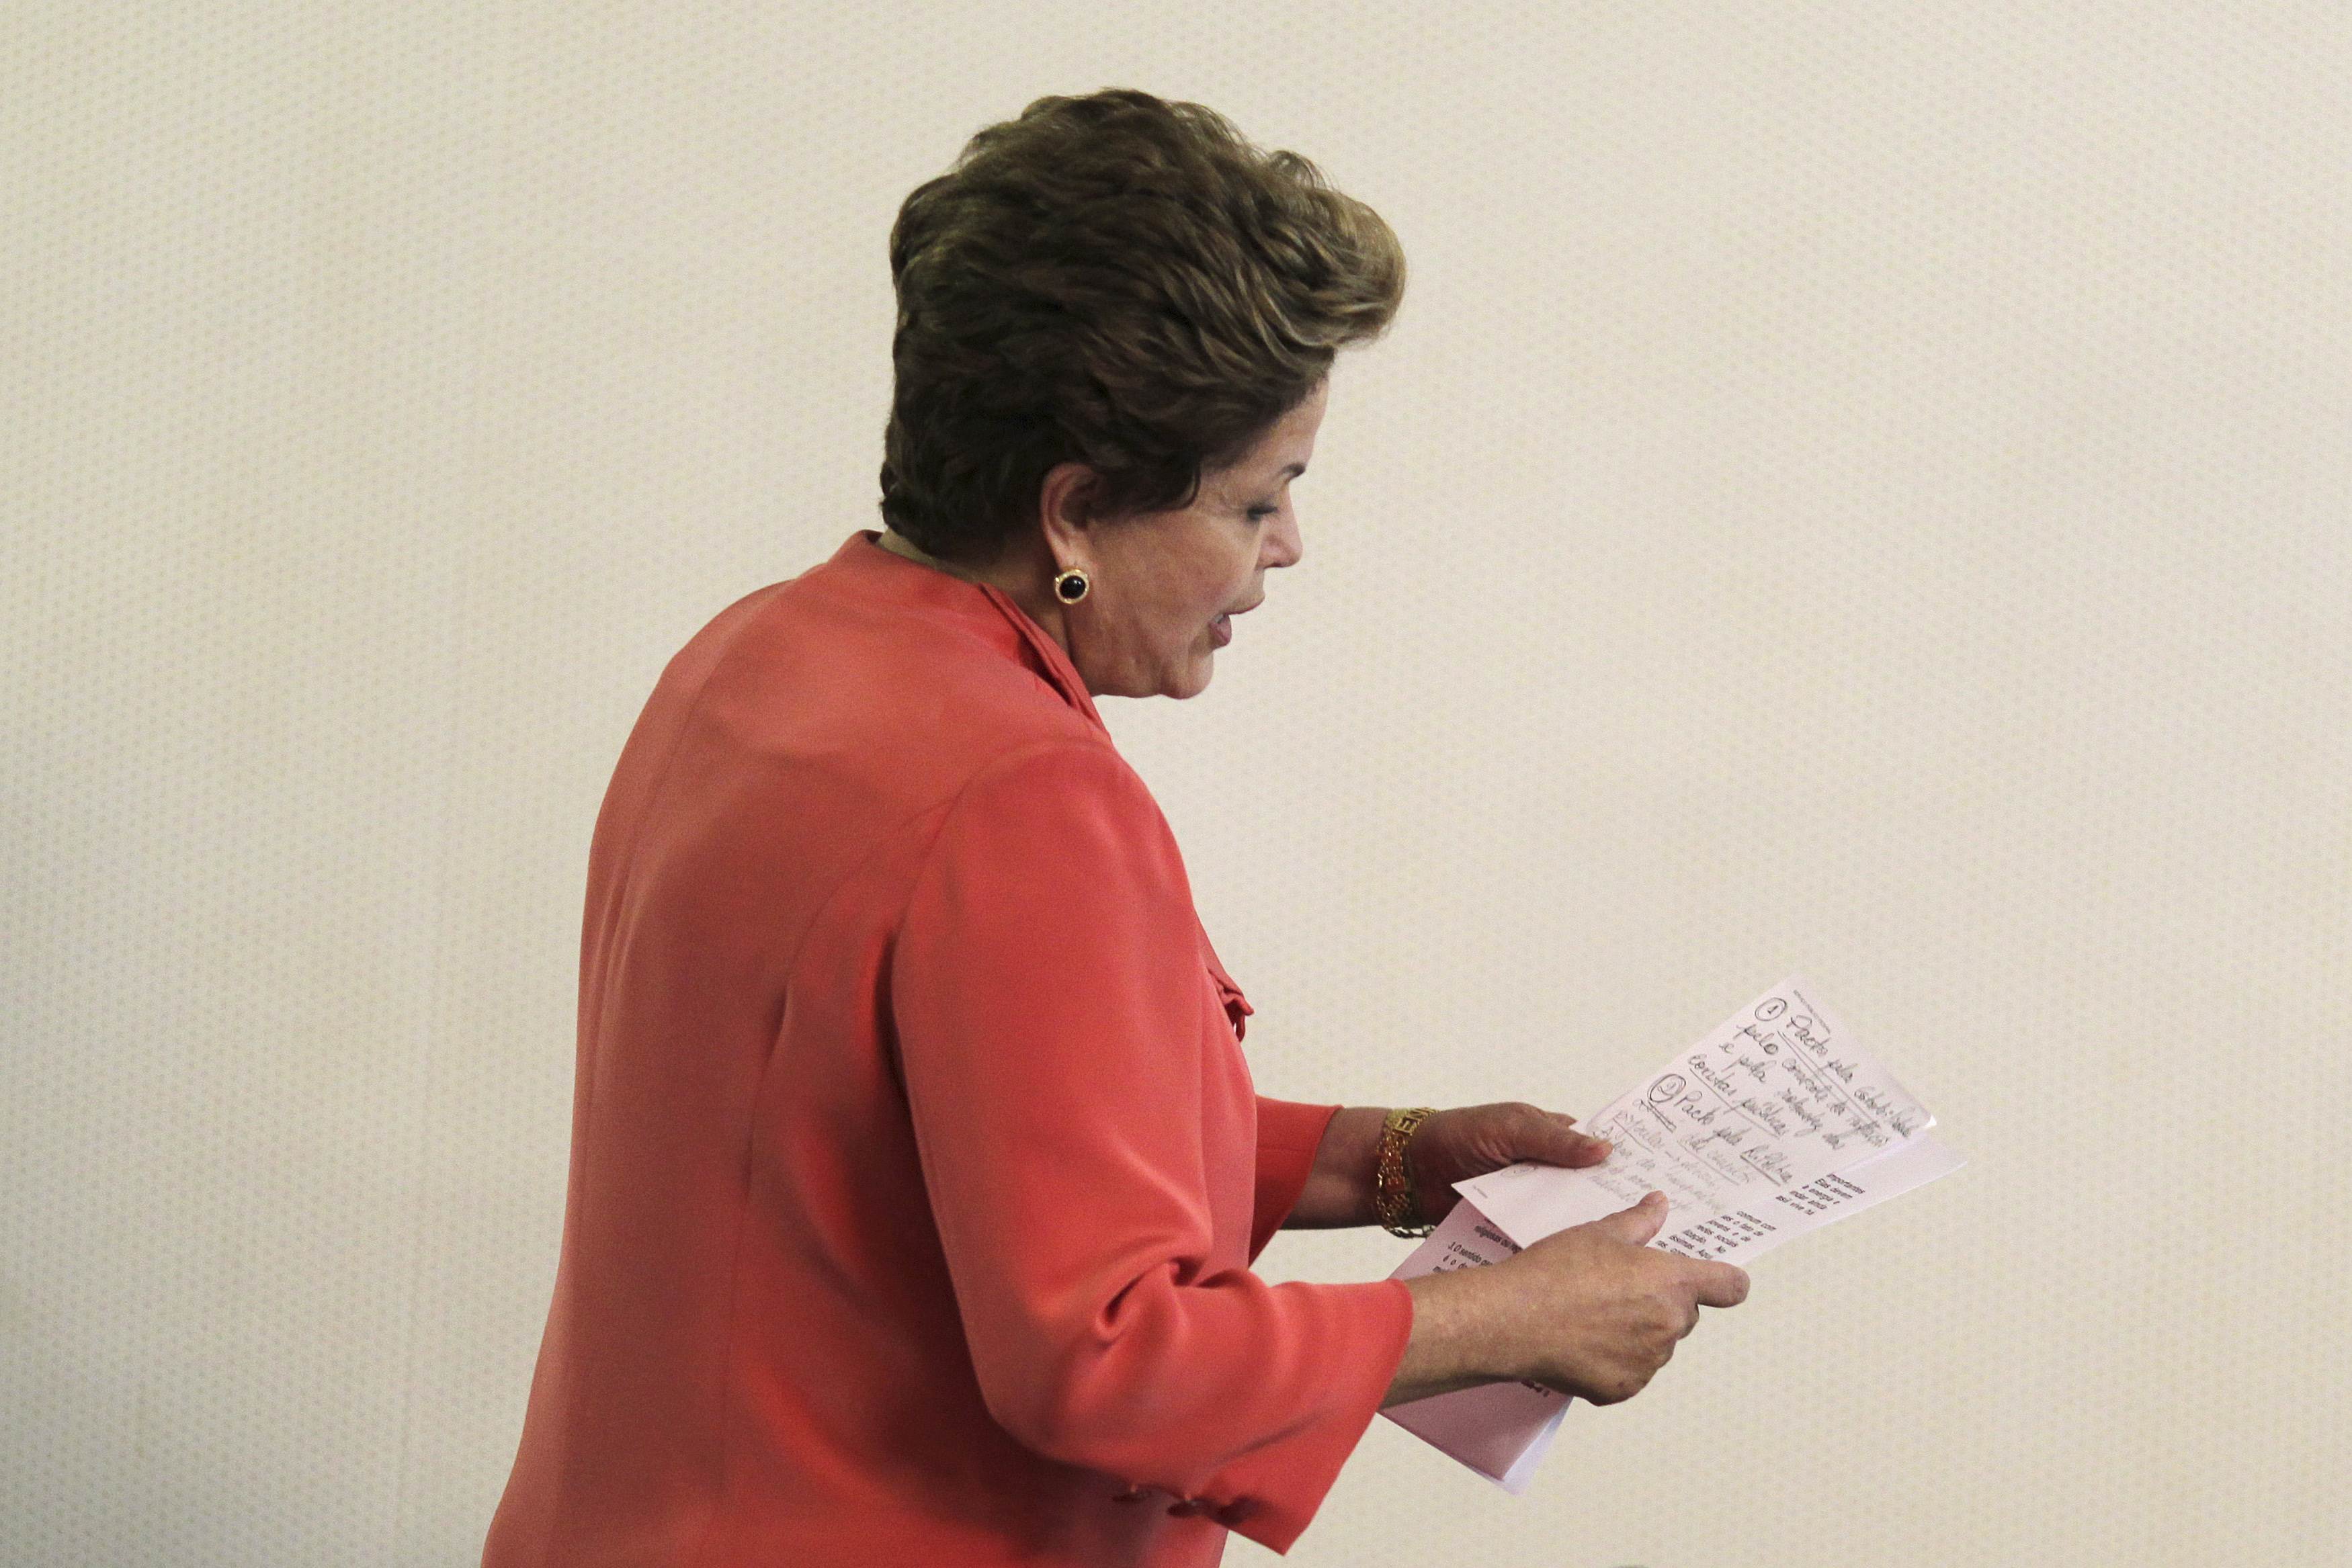 Βραζιλία: Οι υποψήφιες Ρουσέφ και Σίλβα ισόπαλες στον α’ γύρο των εκλογών, σύμφωνα με δημοσκόπηση